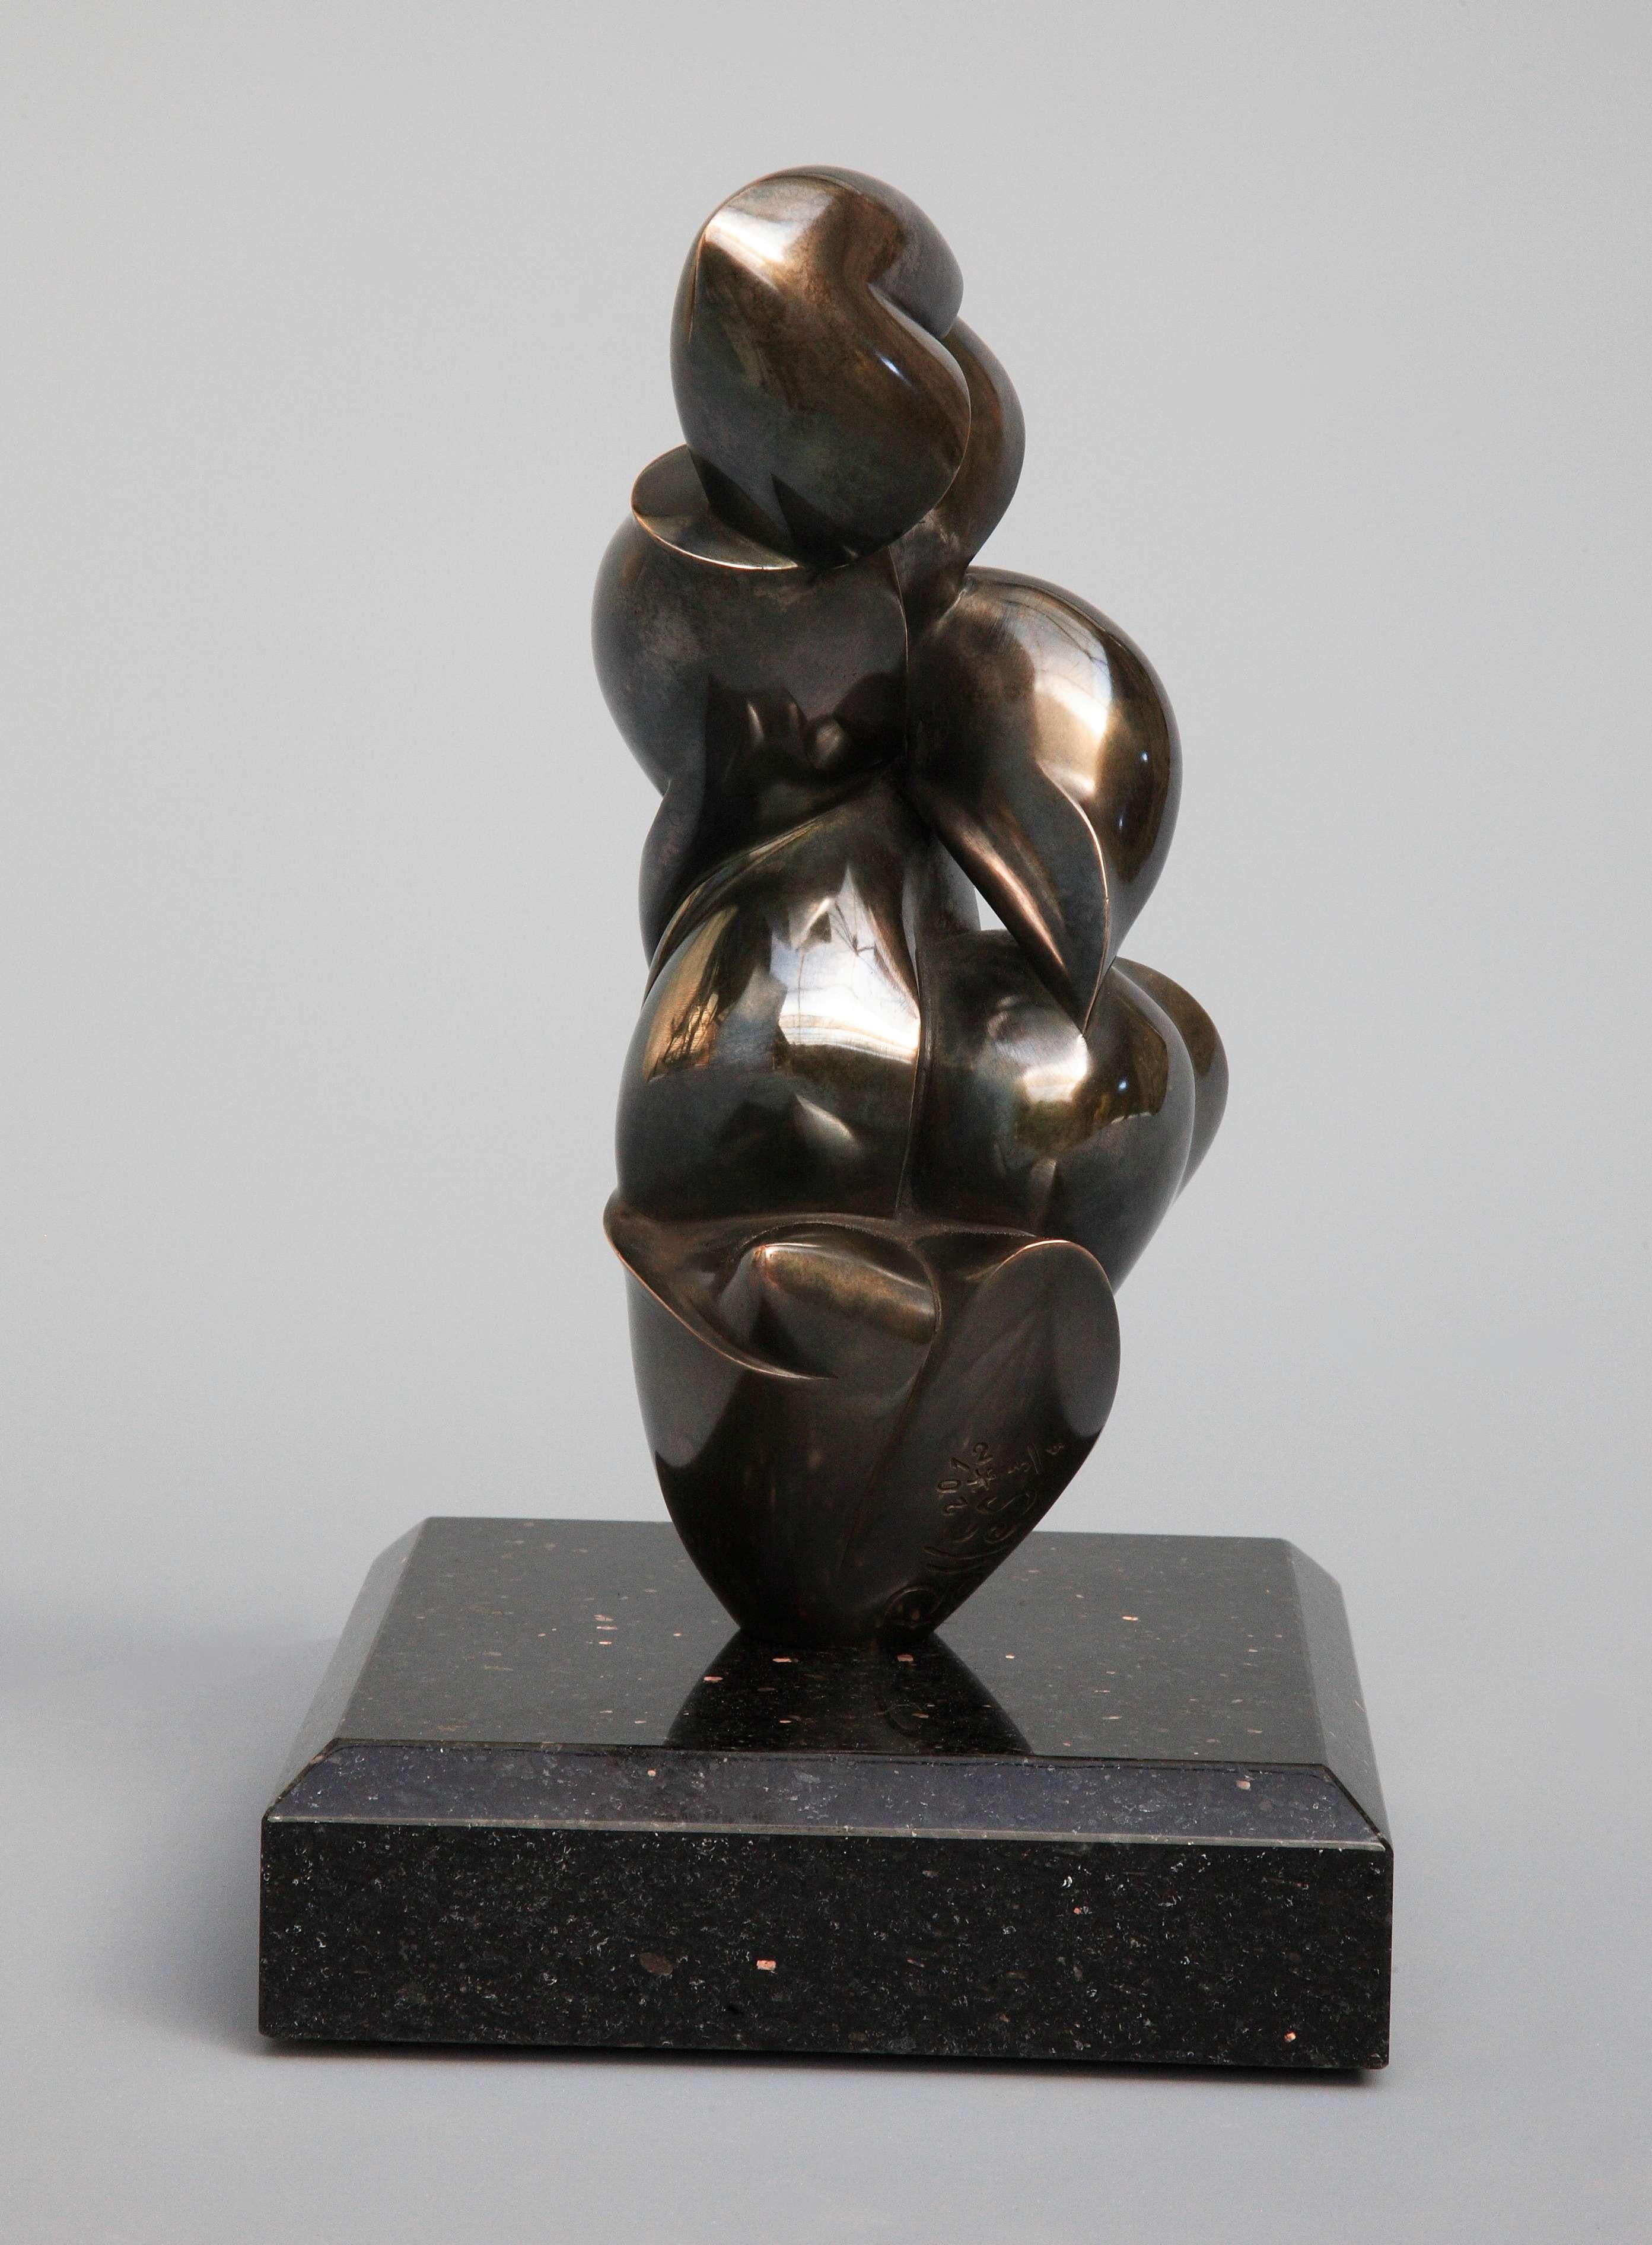 Pollès - Bronze-Skulptur - Chrysolithe
Bronze
3/4
Erstellt im Jahr 2012, gecastet im Jahr 2013
22 x 10 x 13 cm
Signiert und nummeriert

BIOGRAPHIE
Pollès wurde 1945 in Paris geboren
Wie Leonard de Vinci auf der Suche nach anatomischer Perfektion,